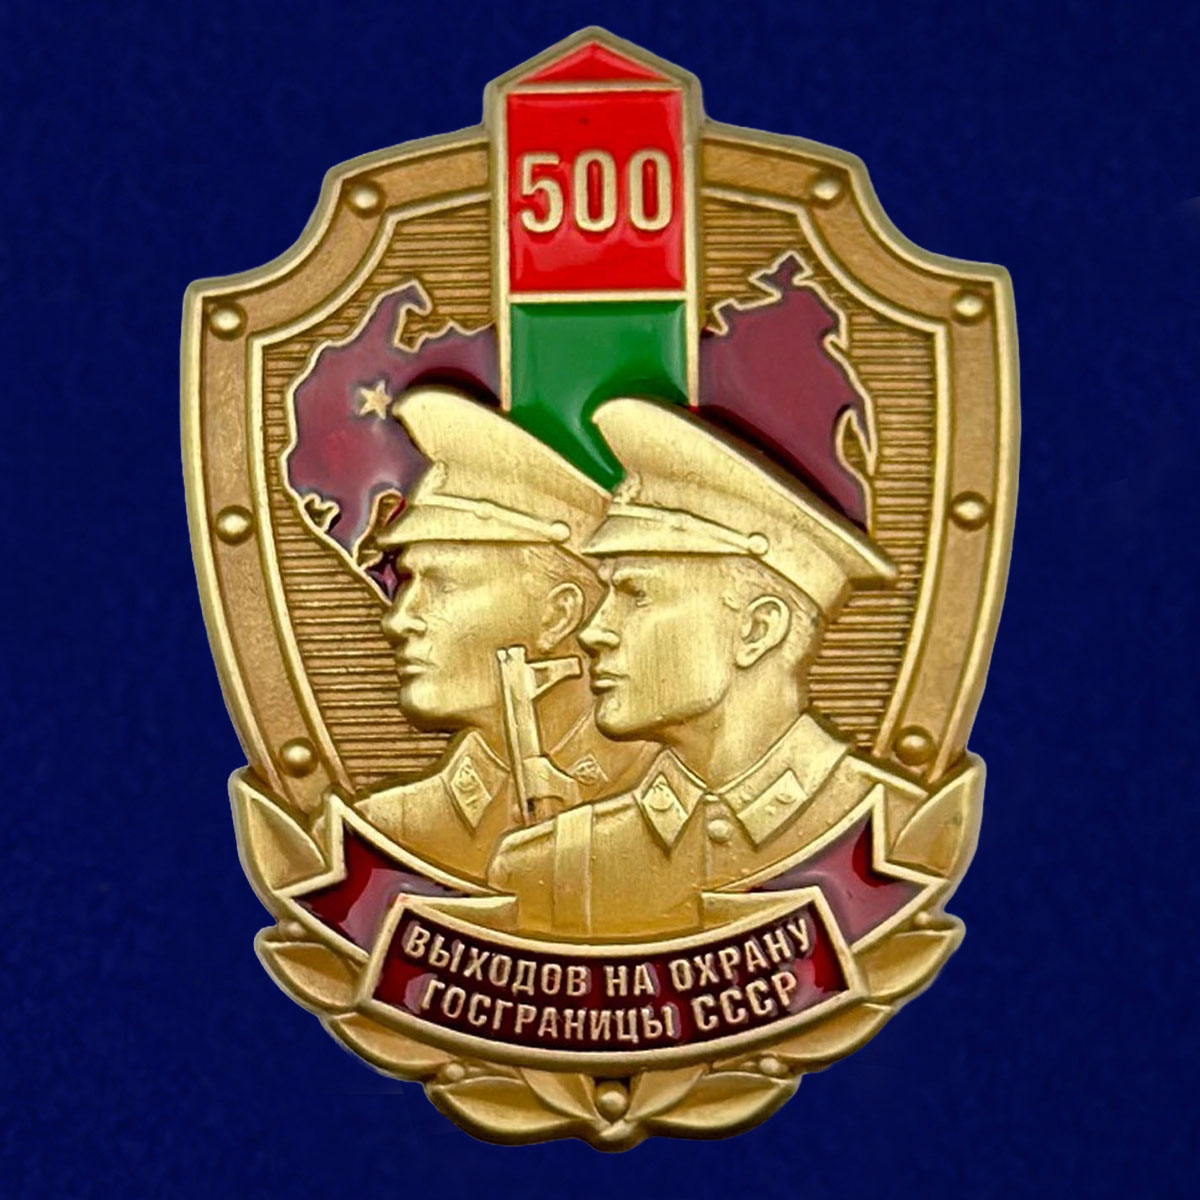 Купить знак «500 выходов на охрану госграницы СССР»